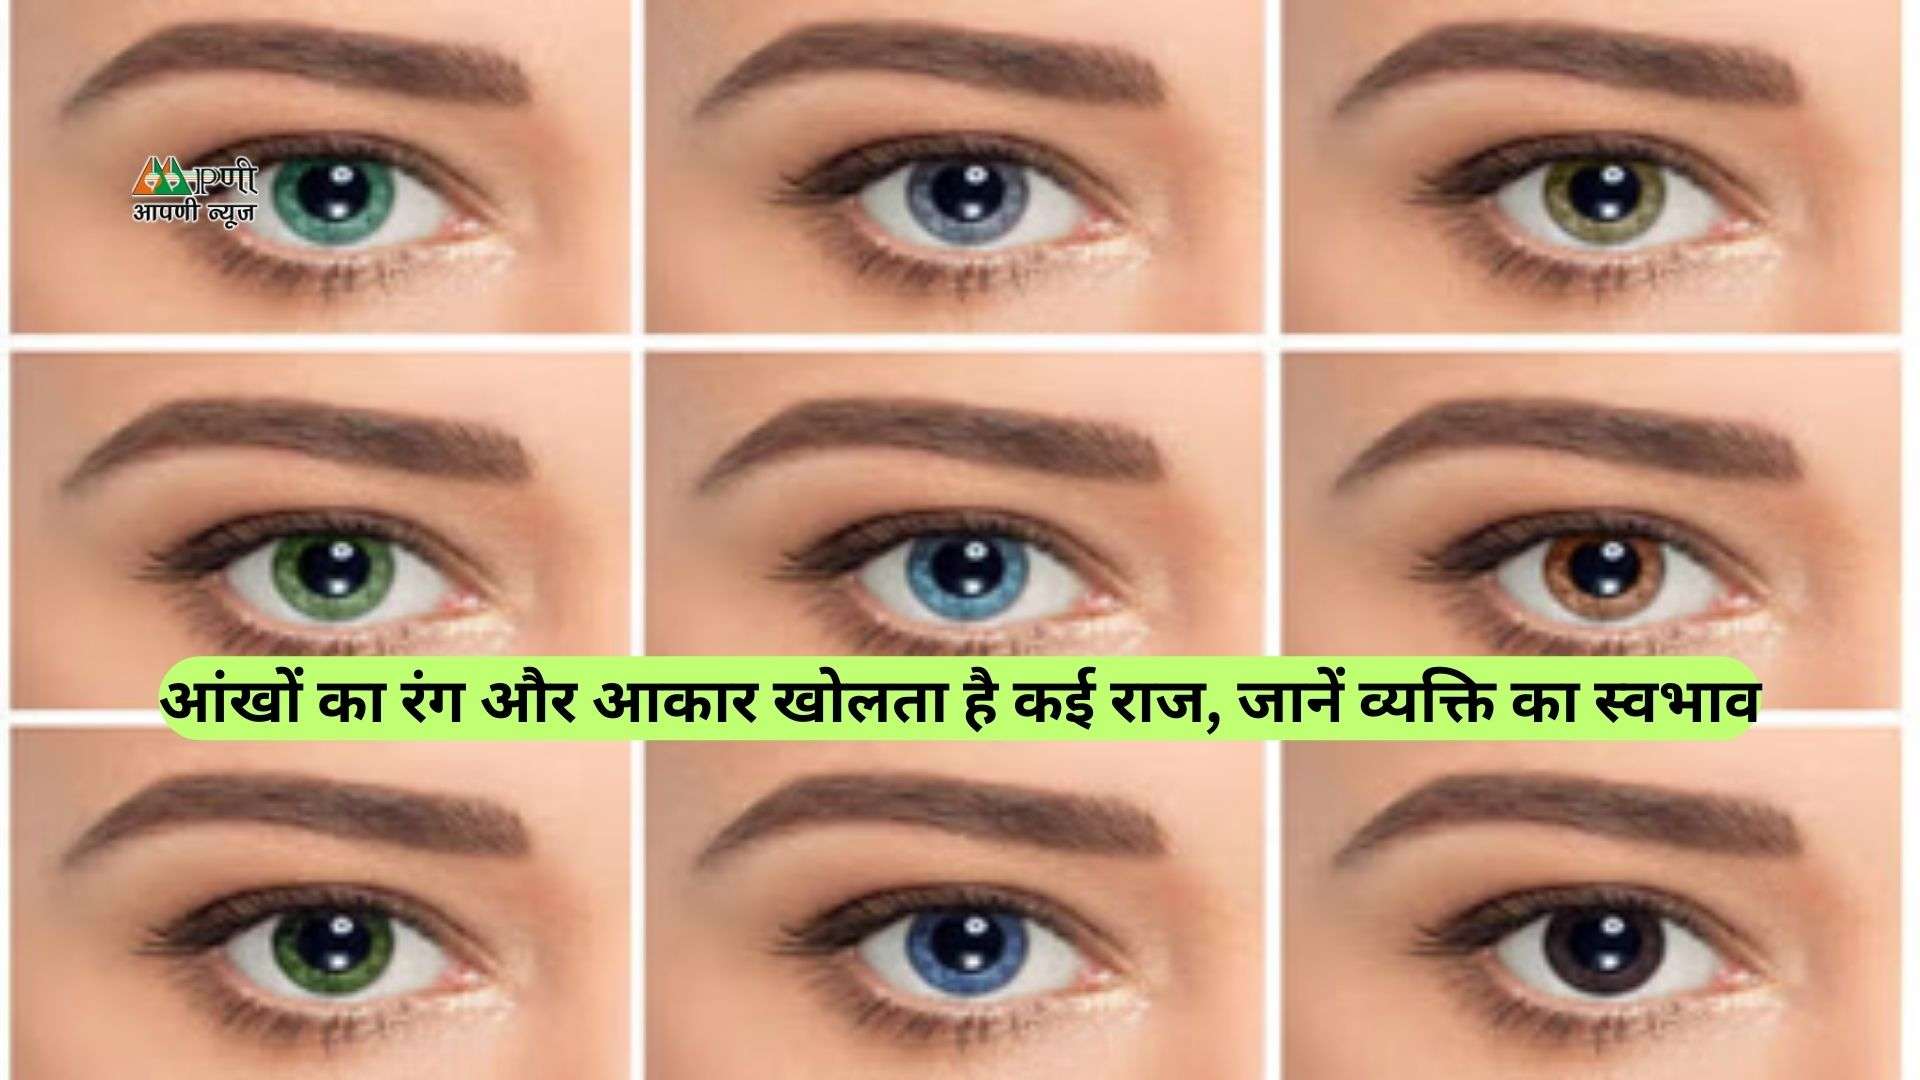 Samudrik Shastra: आंखों का रंग और आकार खोलता है कई राज, जानें व्यक्ति का स्वभाव